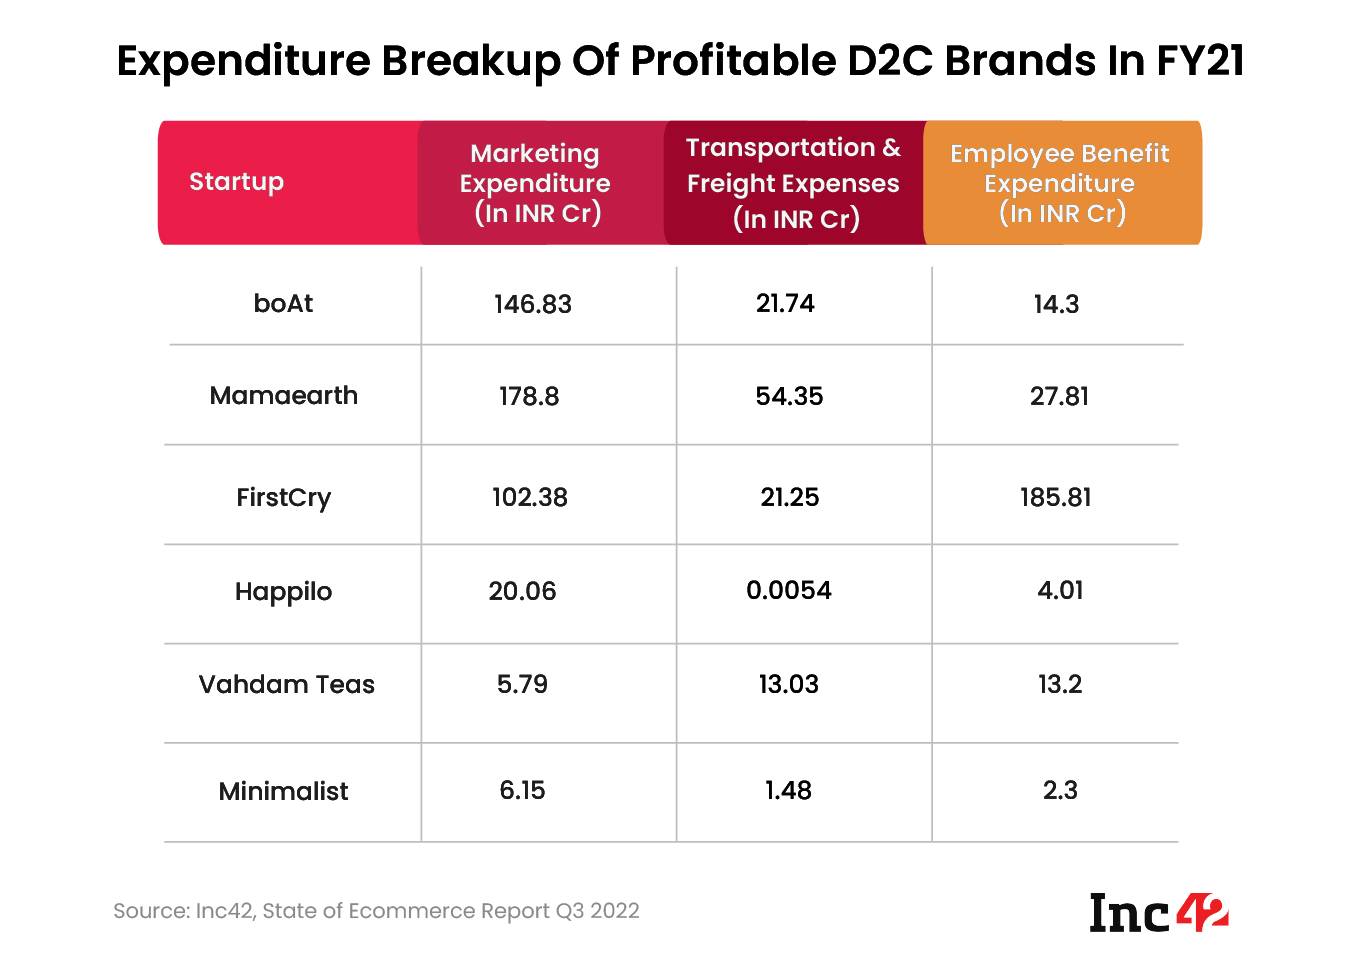 Expenditure Breakup of Profitable D2C Brands in FY21